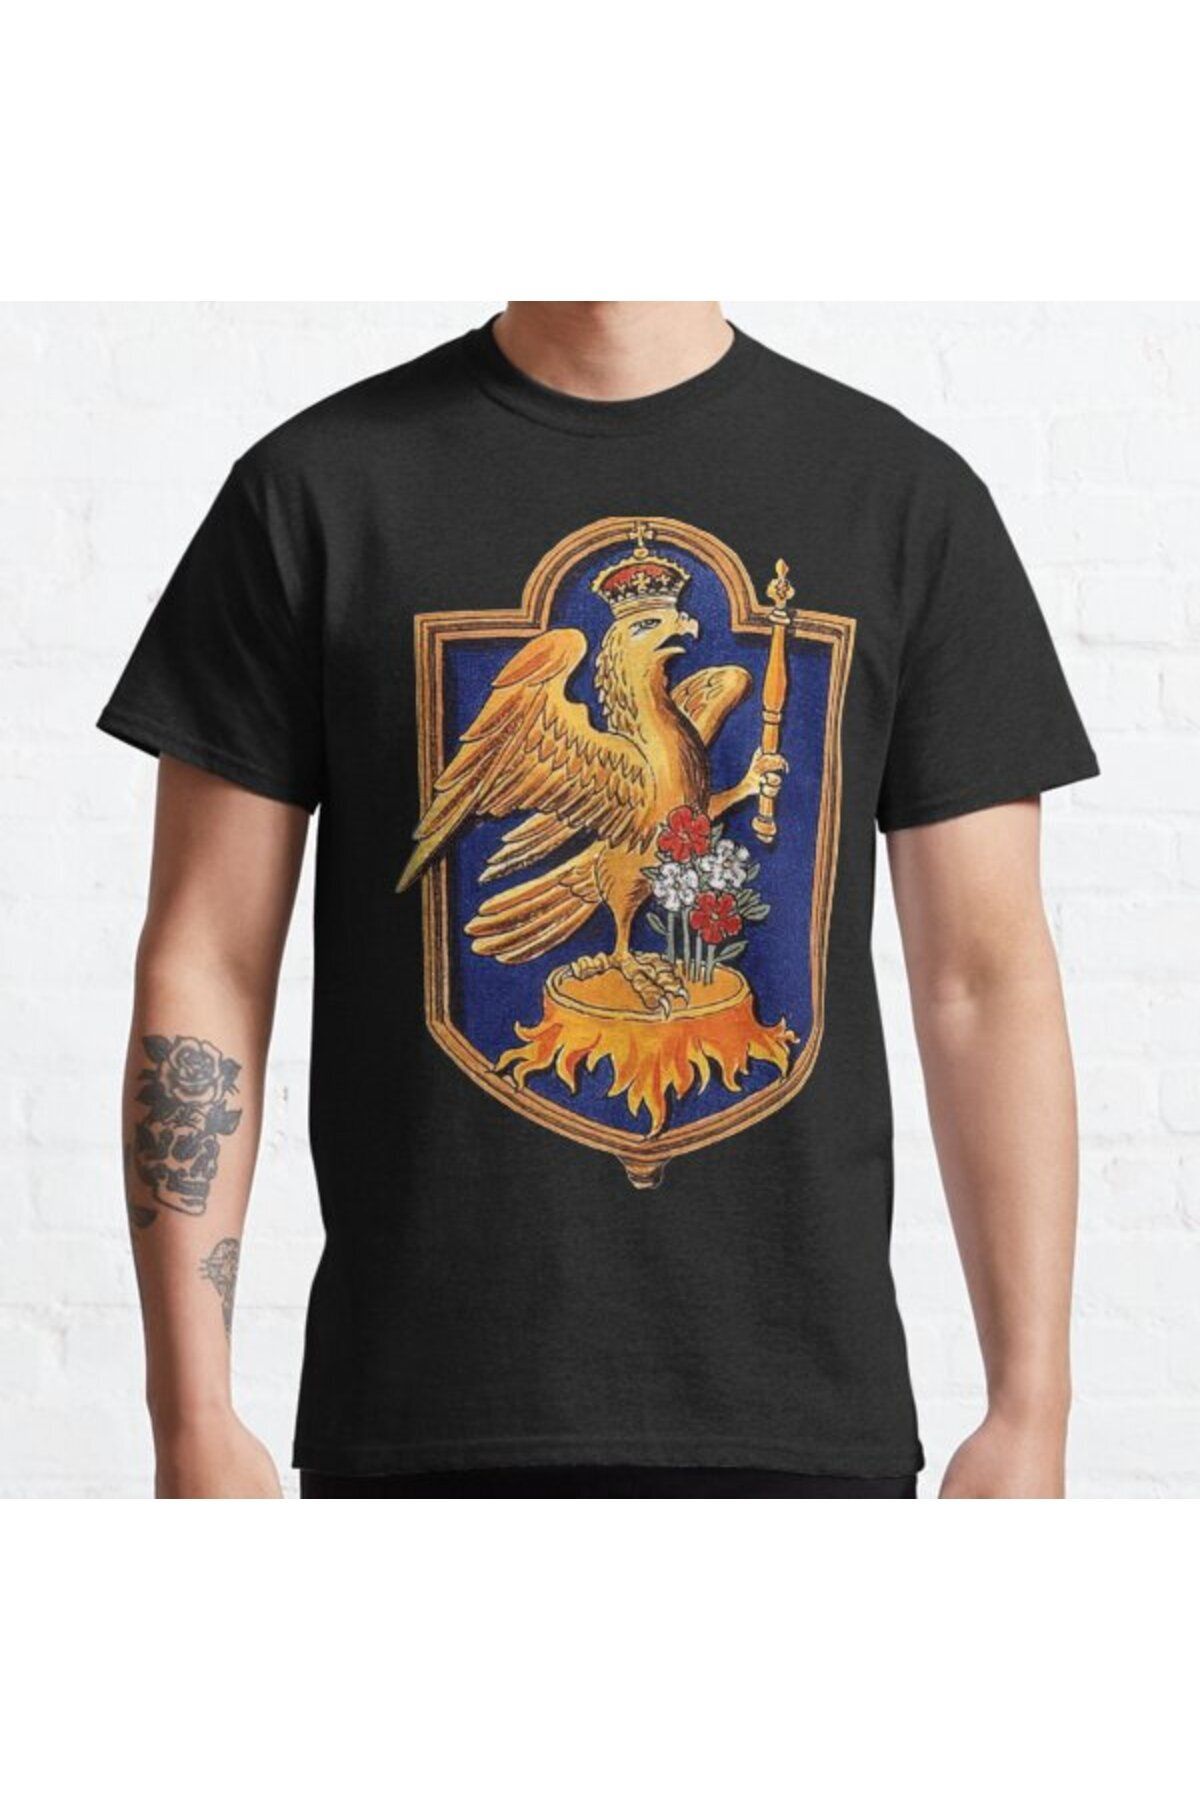 ZOKAWEAR Oversize Unisex Anne Boleyn Queen Royal Falcon Badge Tasarım Baskılı Tshirt